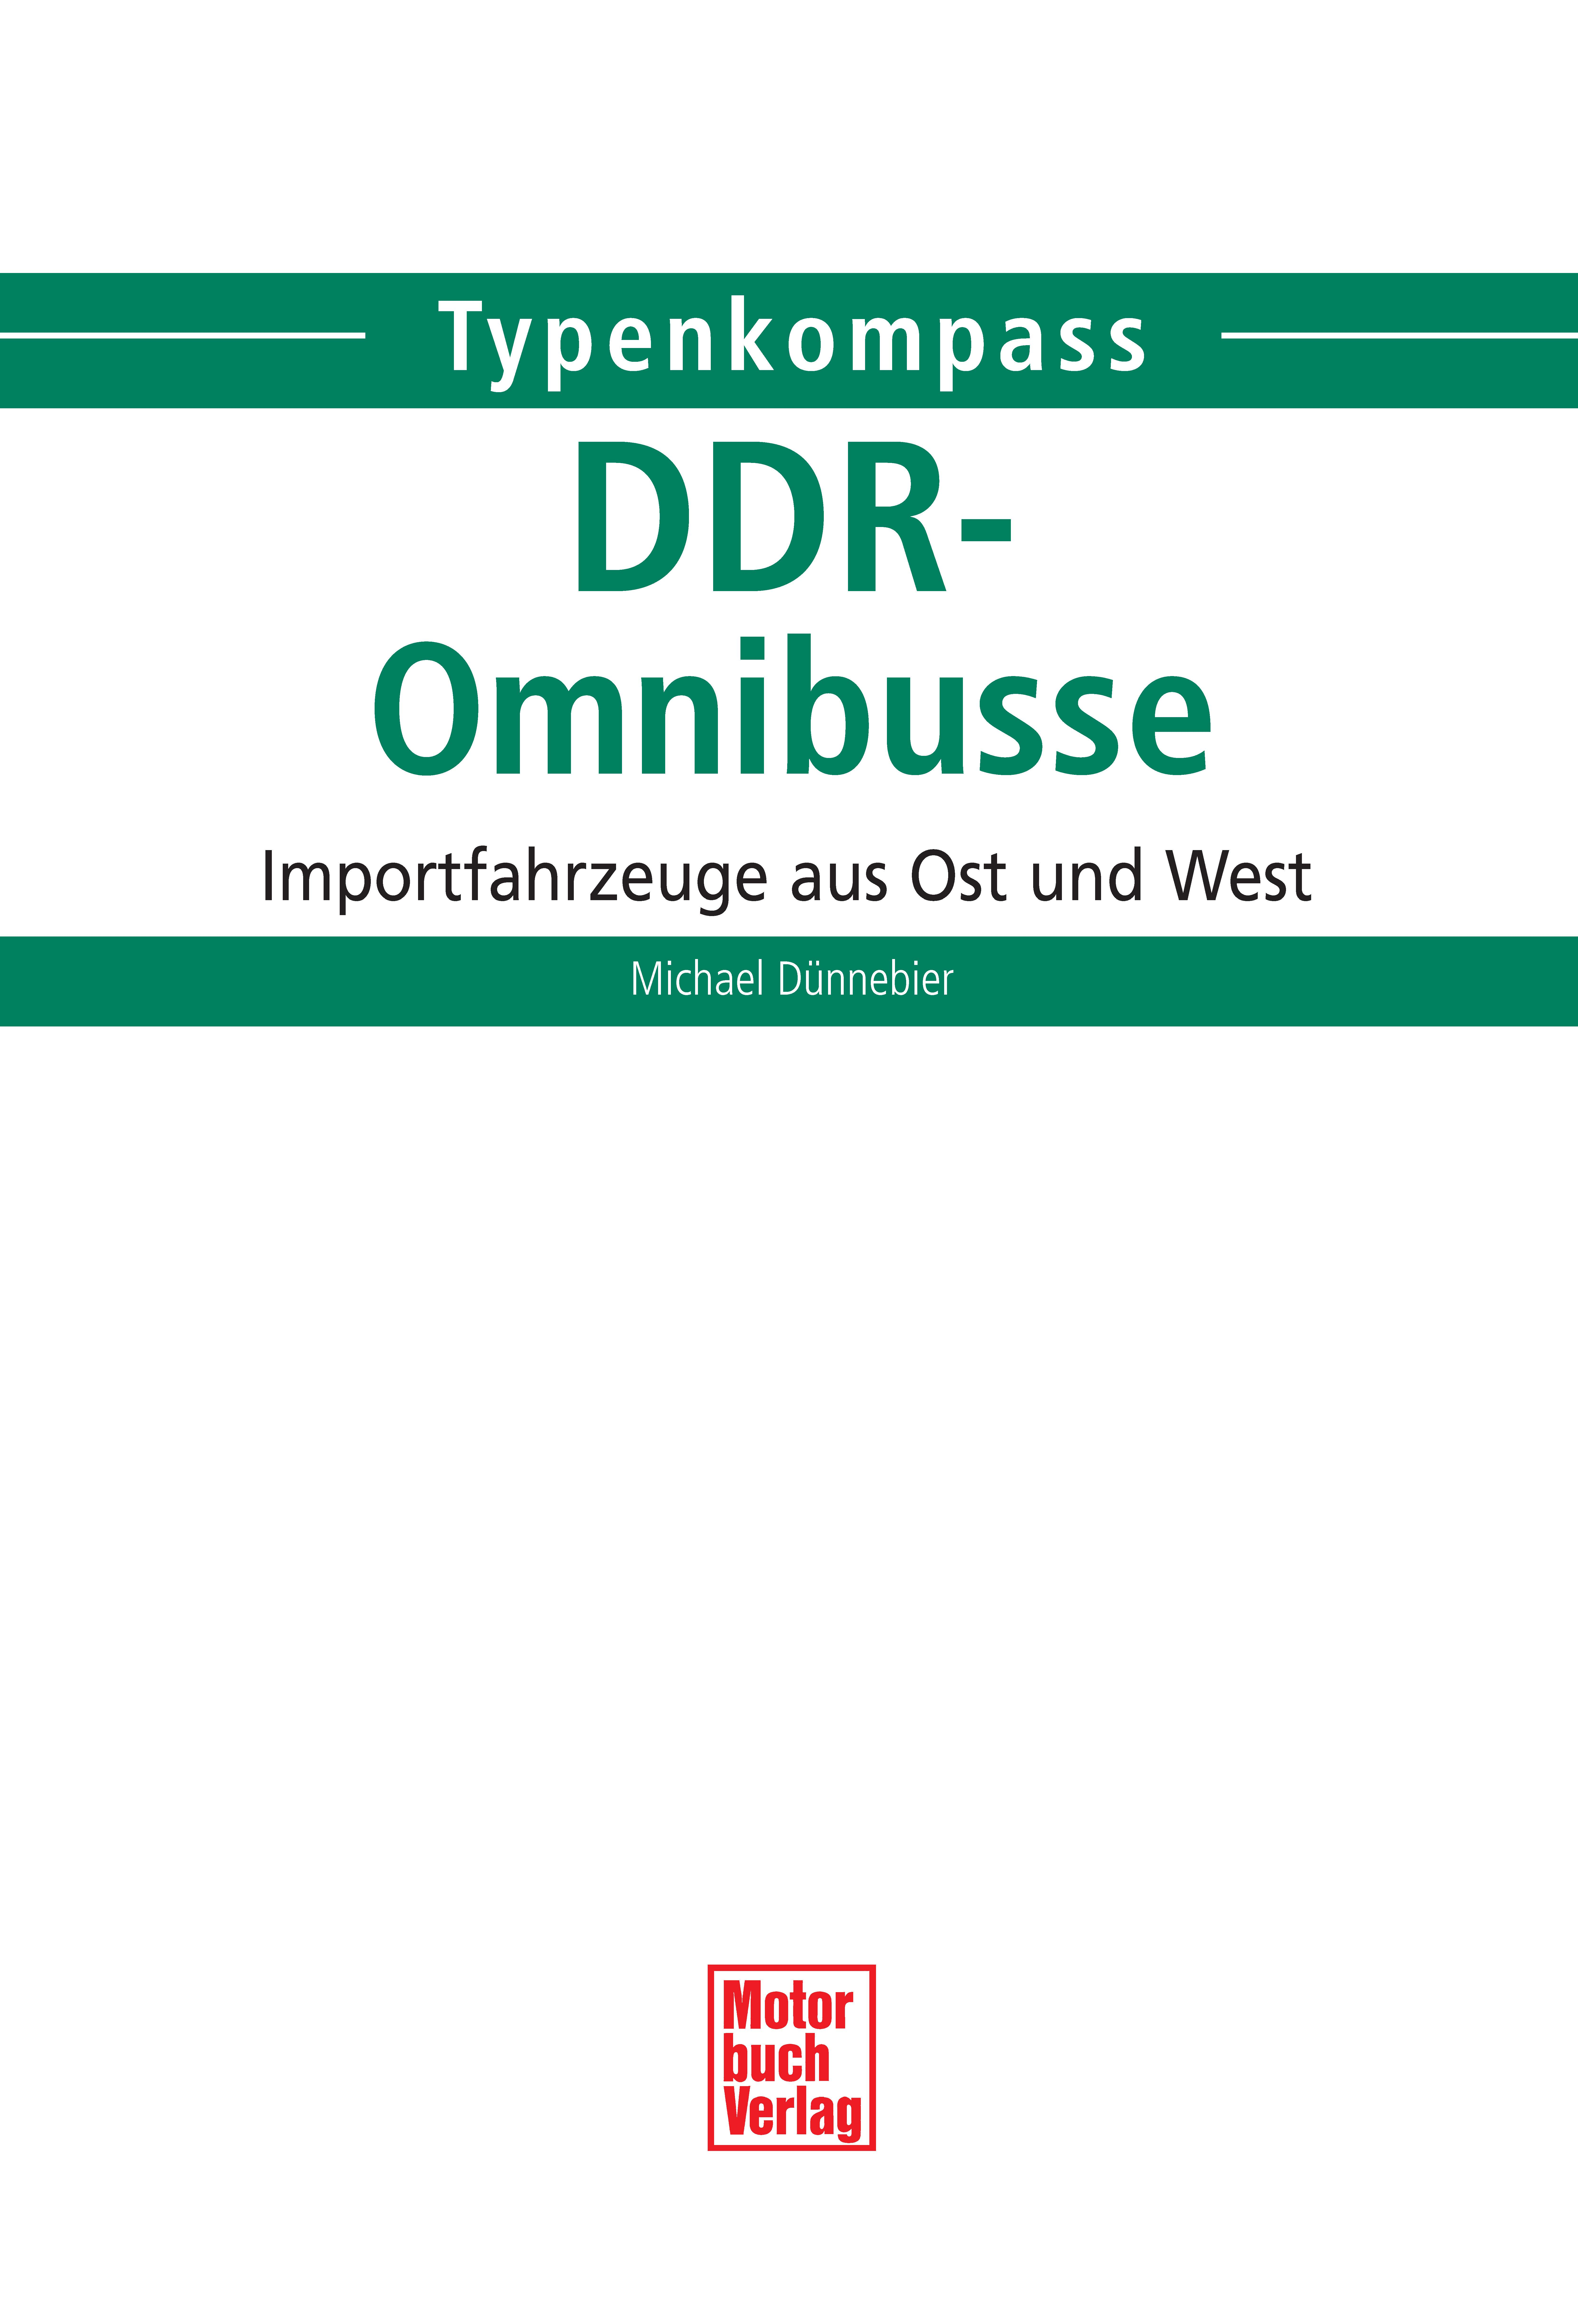 TK DDR Omnibusse_Seite_02